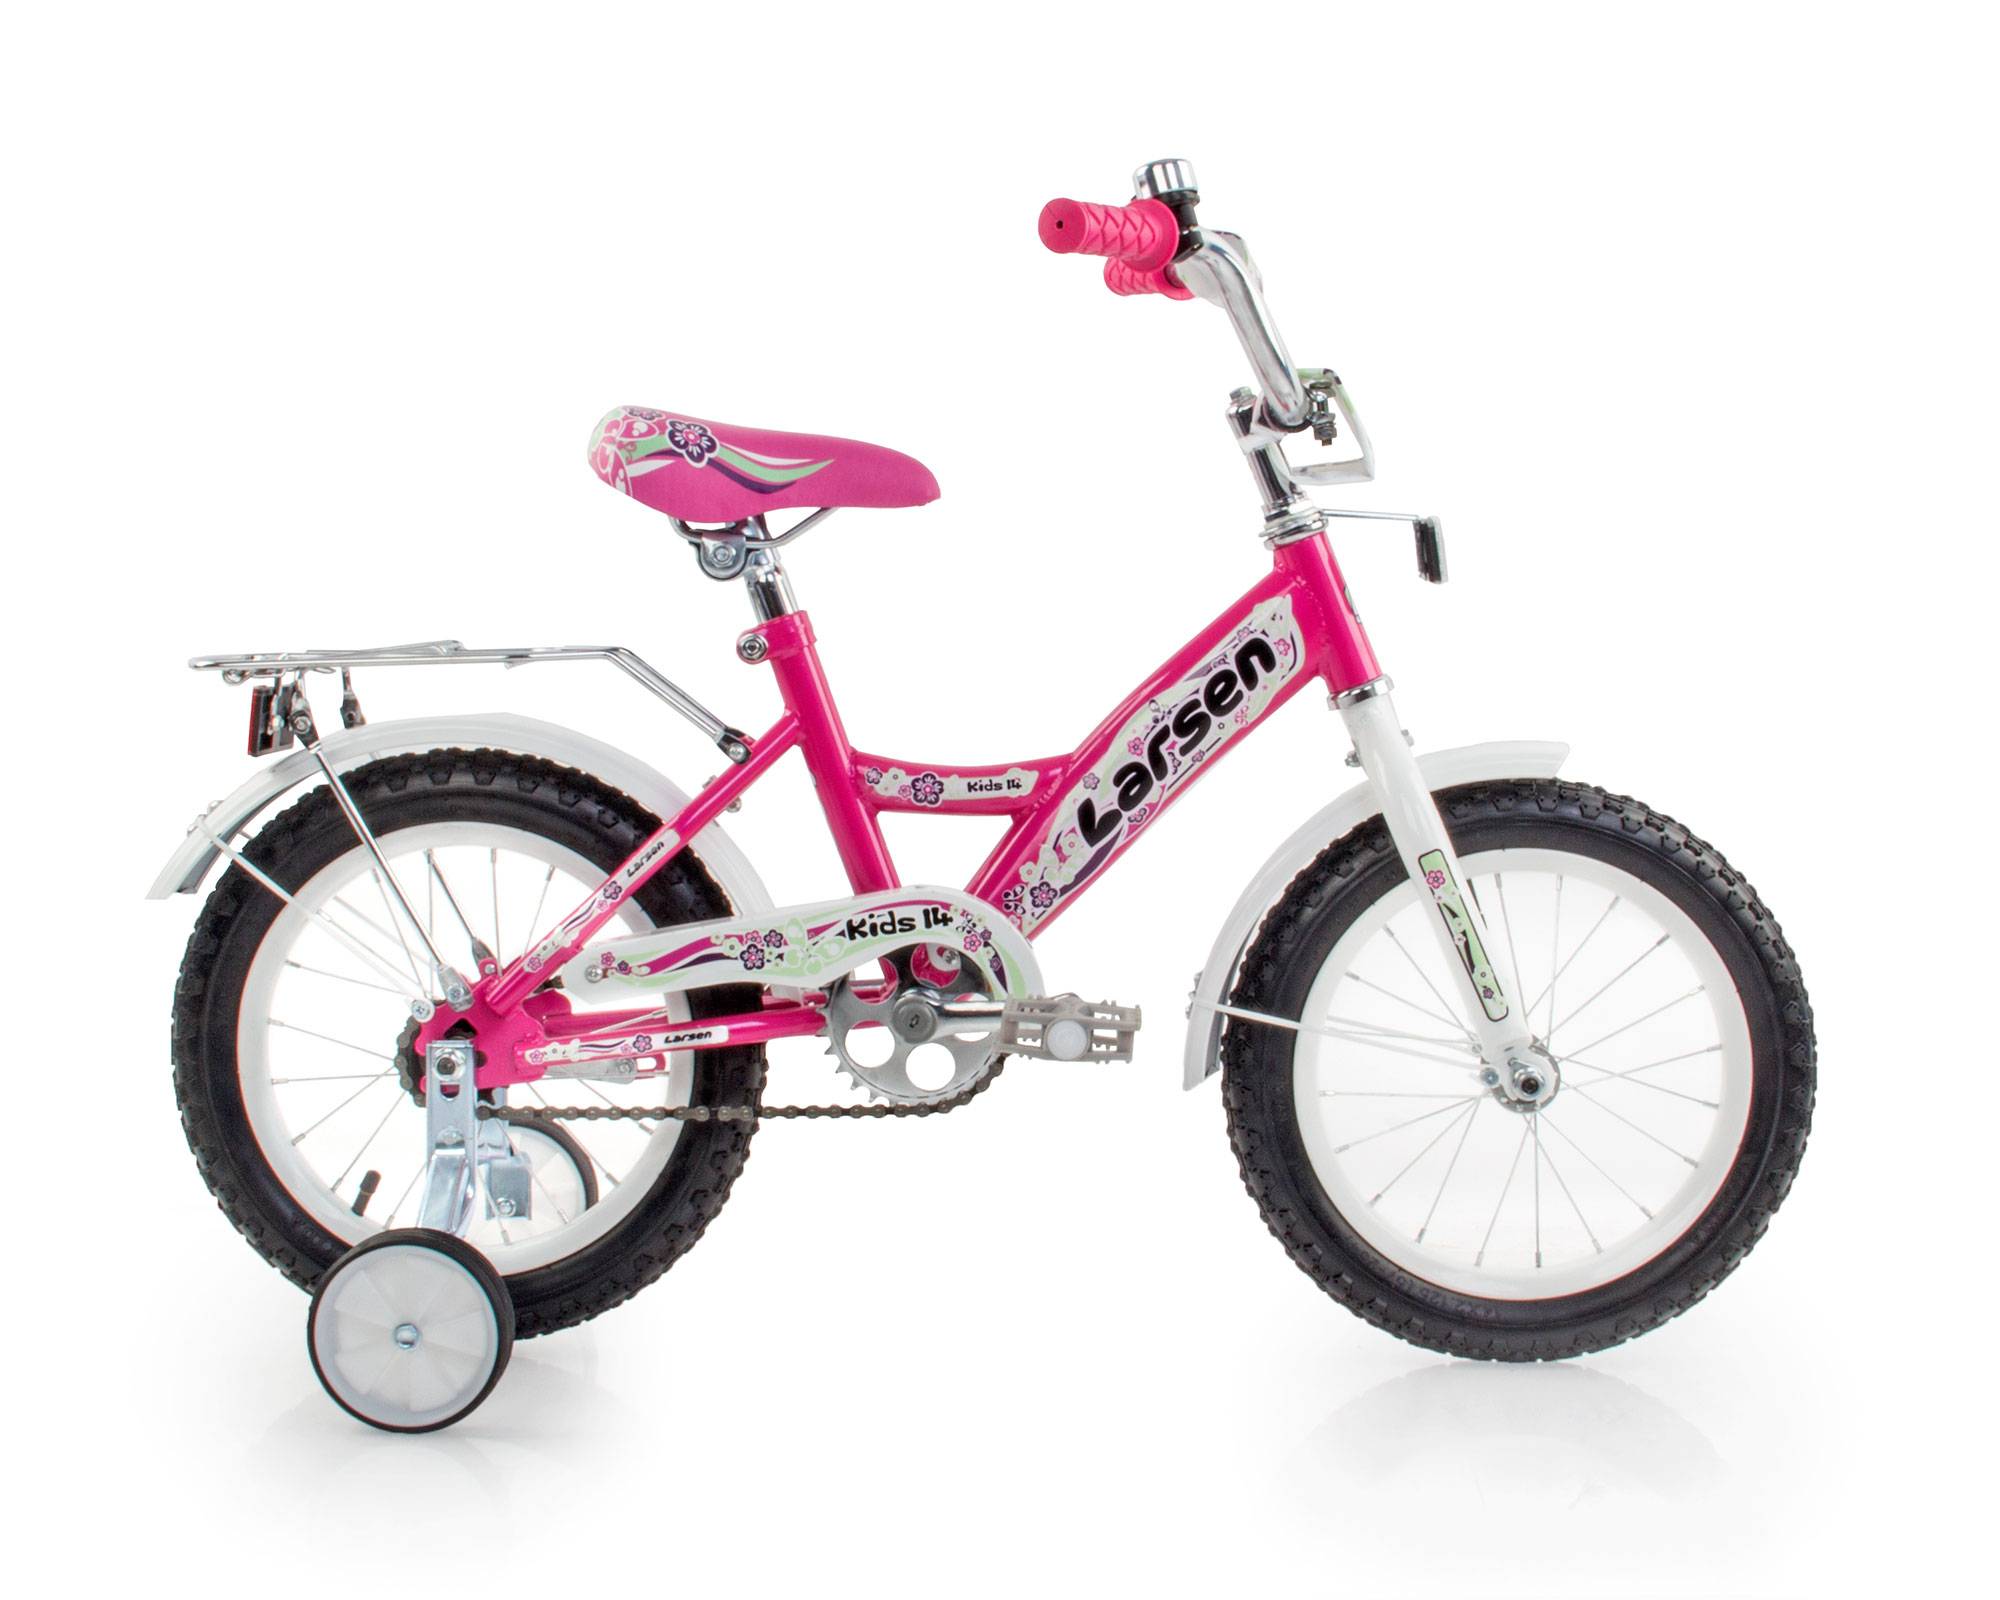 Велосипед розовый 14. Детский велосипед Larsen Kids 14. Larsen розовый велосипед. Велосипед Larsen Kids 12 красный. Велосипед Ларсен розовый.